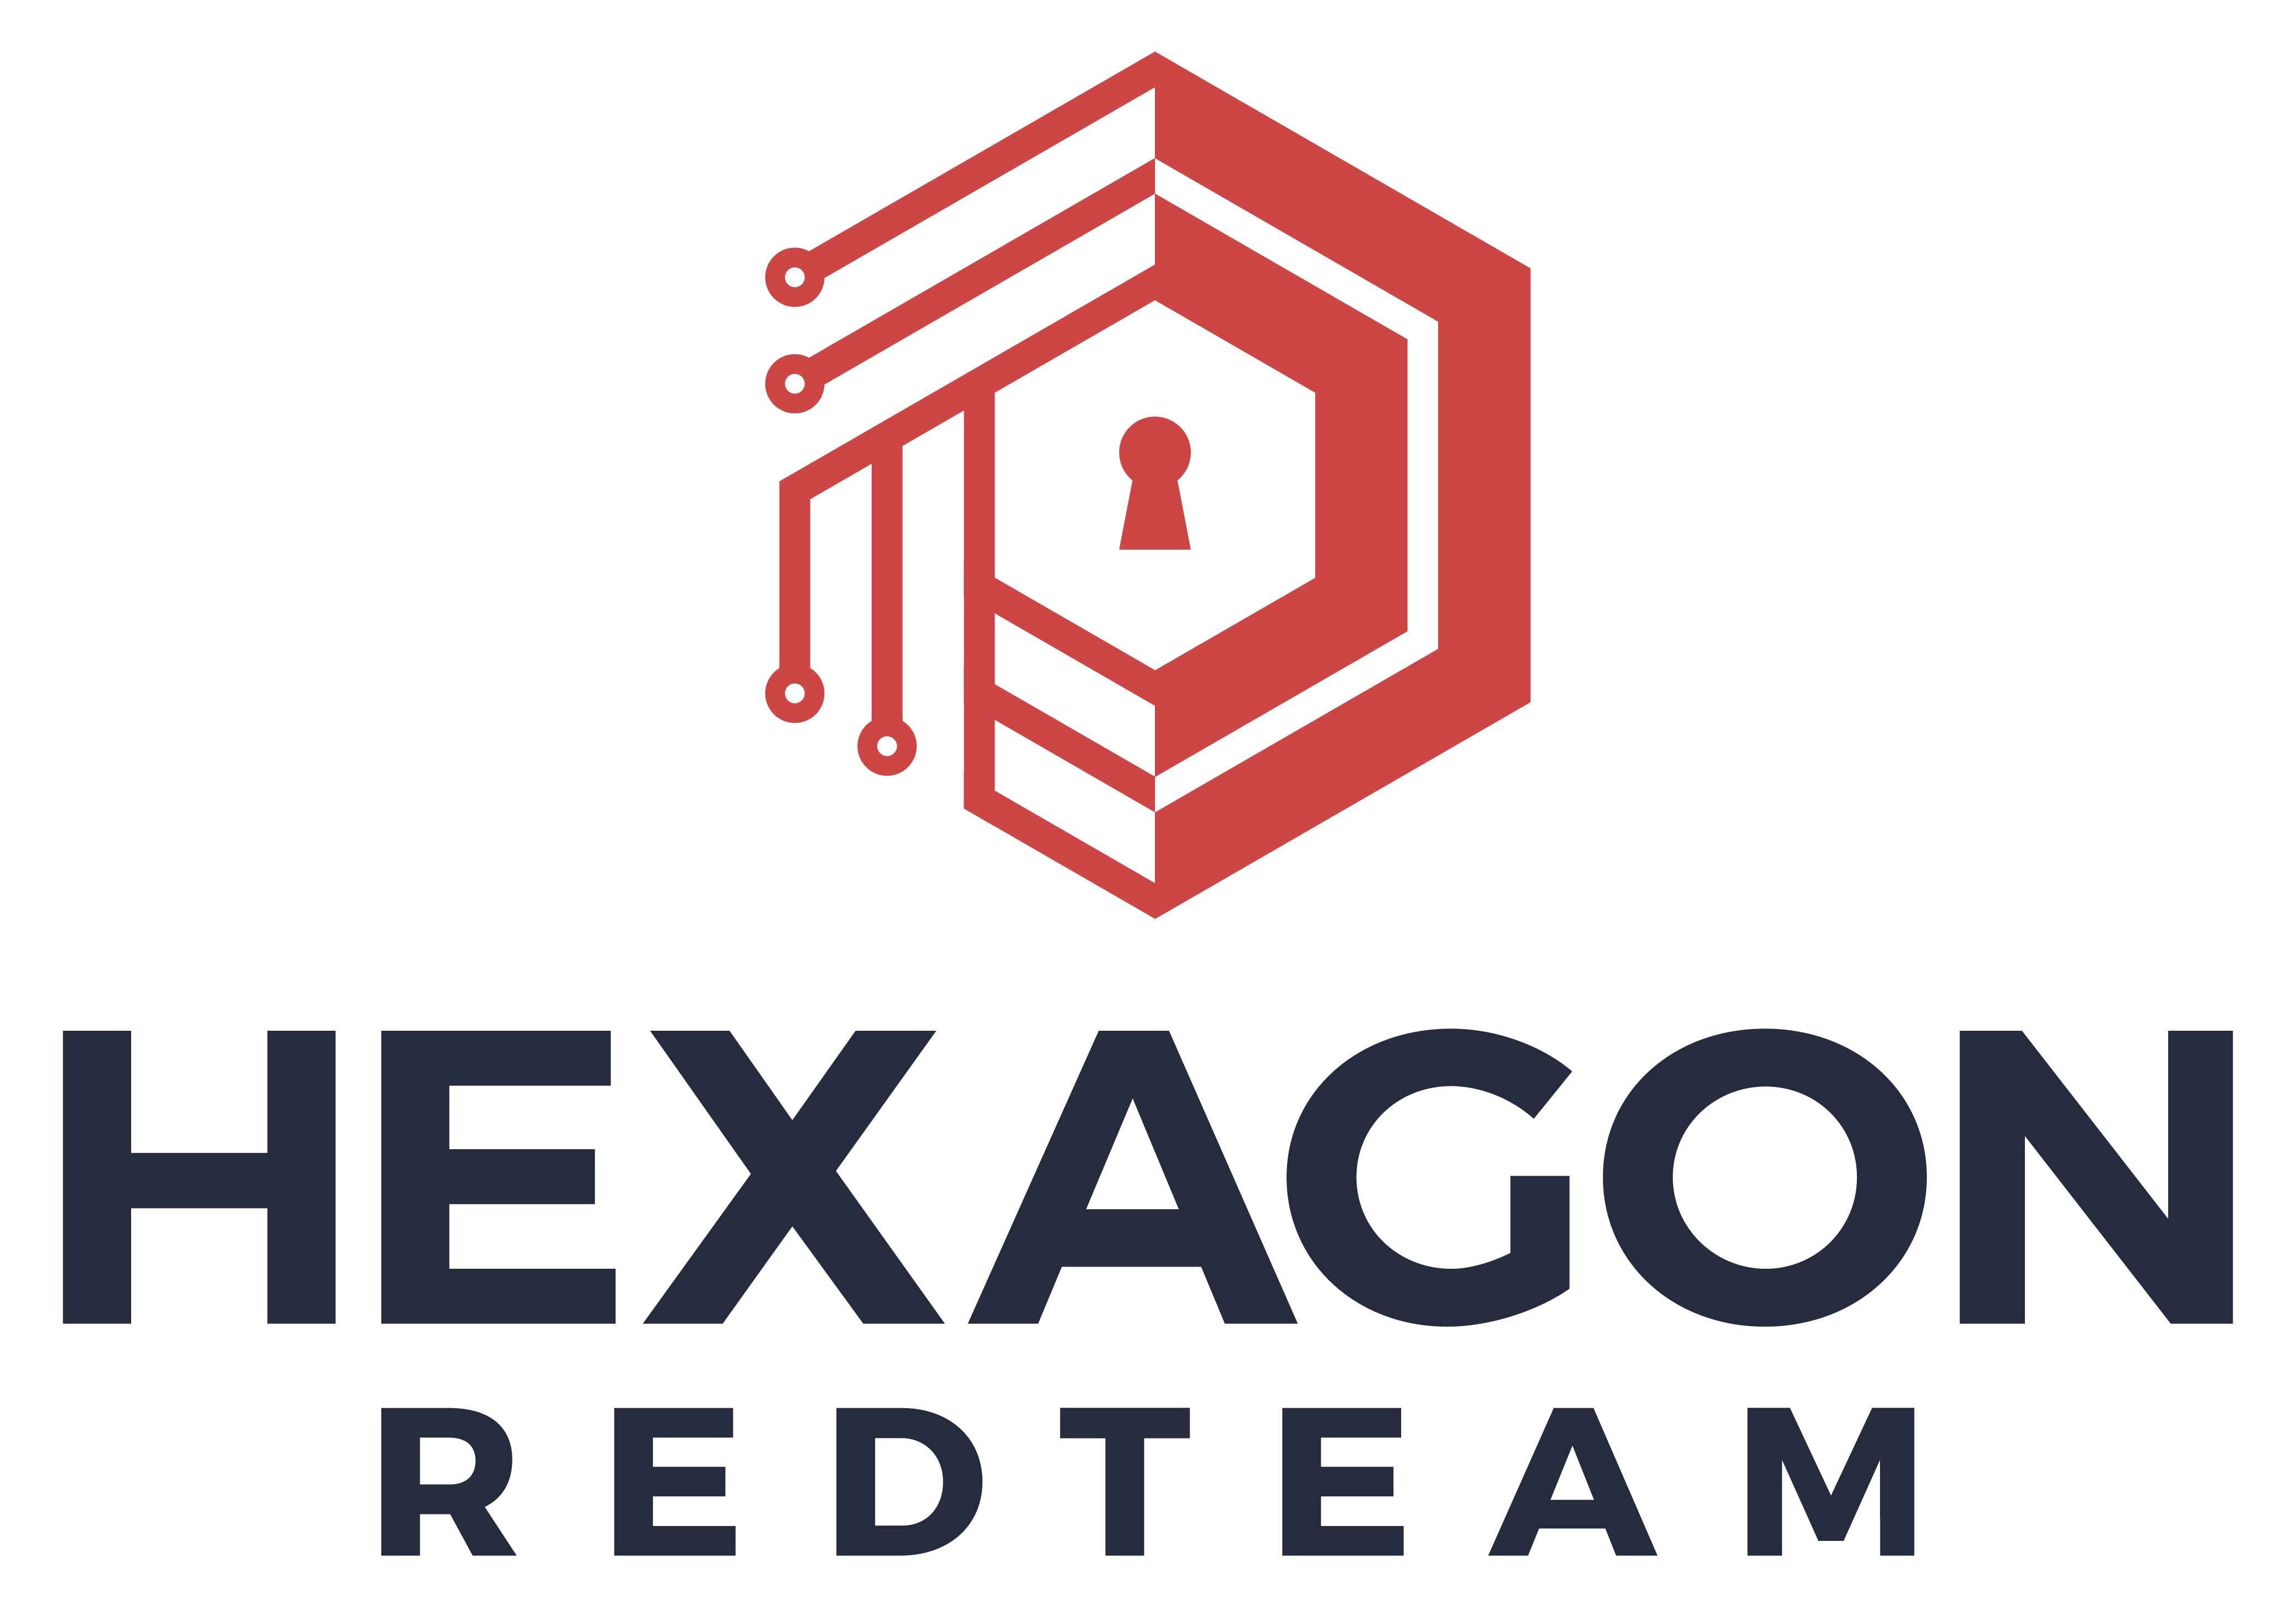 Hexagon RedTeam logo